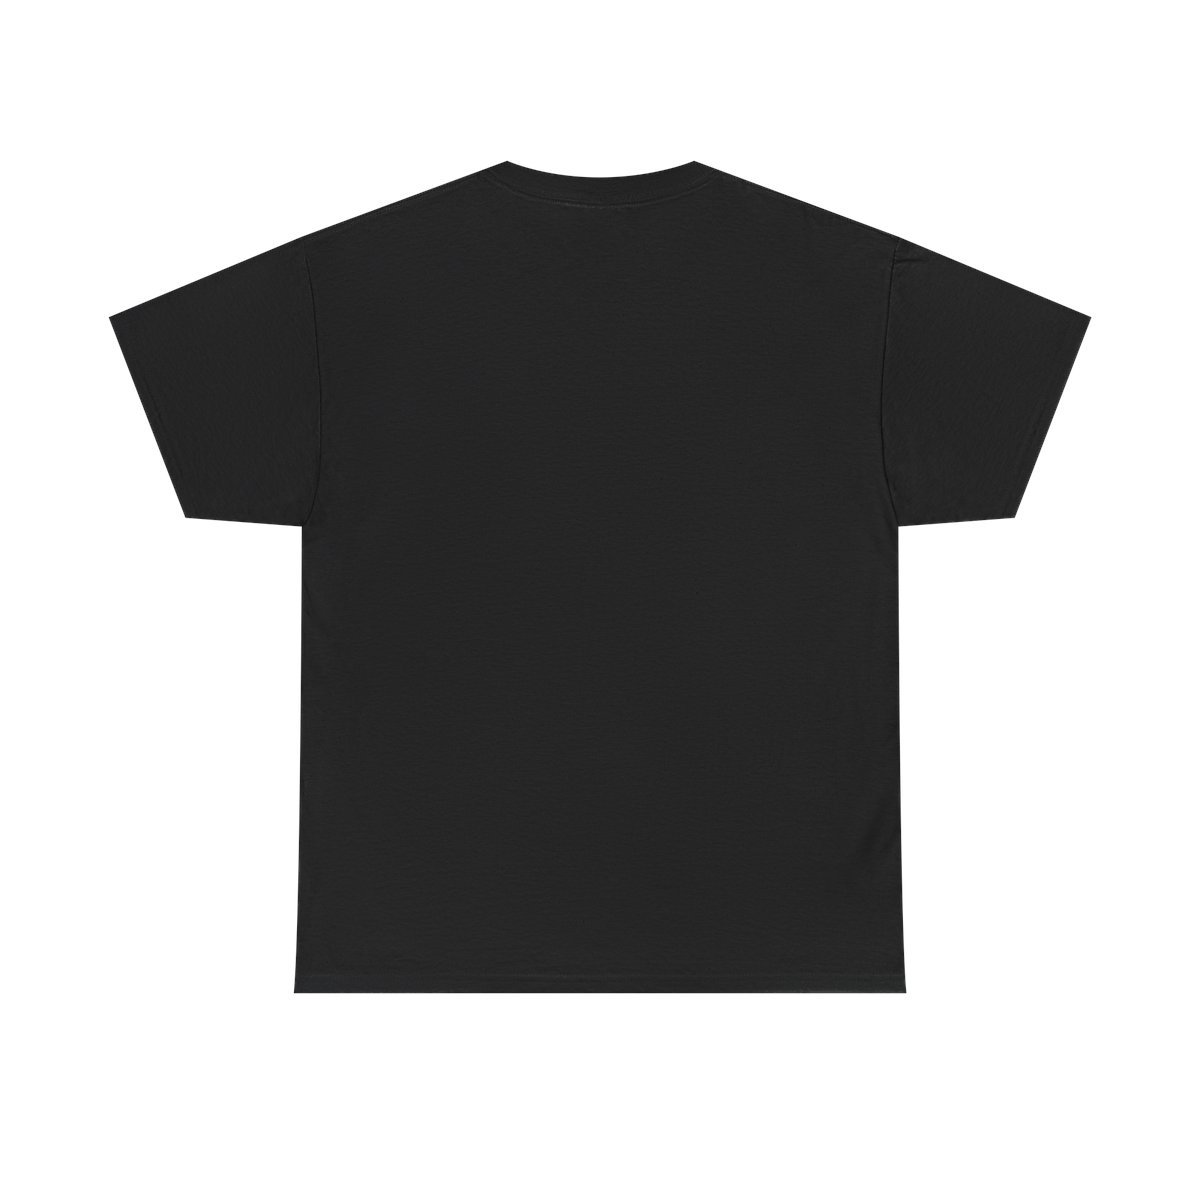 Mawcore – Grey Shield Short Sleeve Tshirt